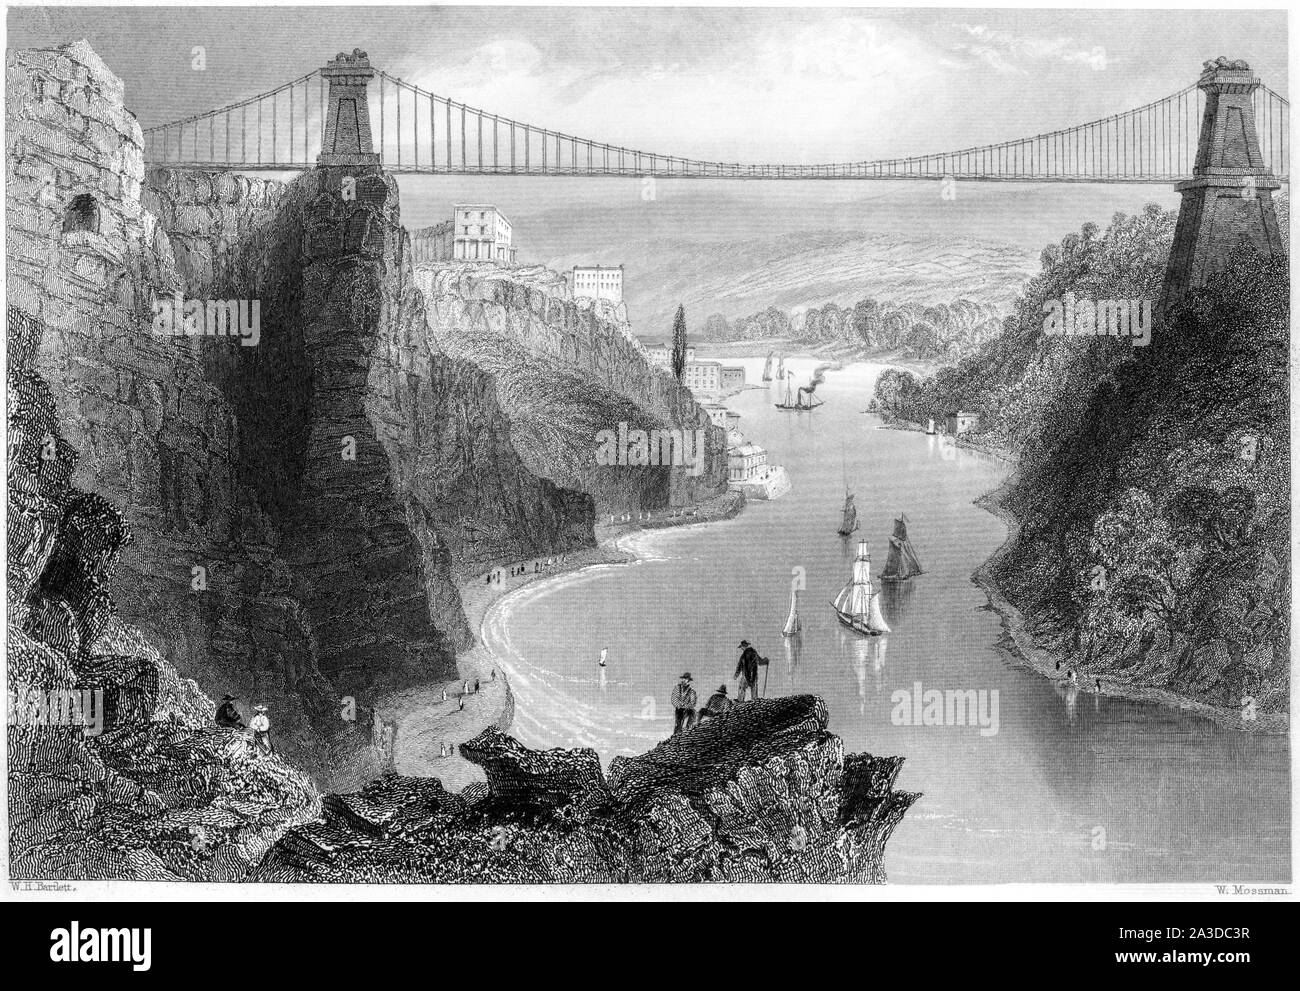 Une gravure du pont suspendu de Clifton près de Bristol numérisées à haute résolution à partir d'un livre imprimé en 1842. Croyait libres de droit. Banque D'Images